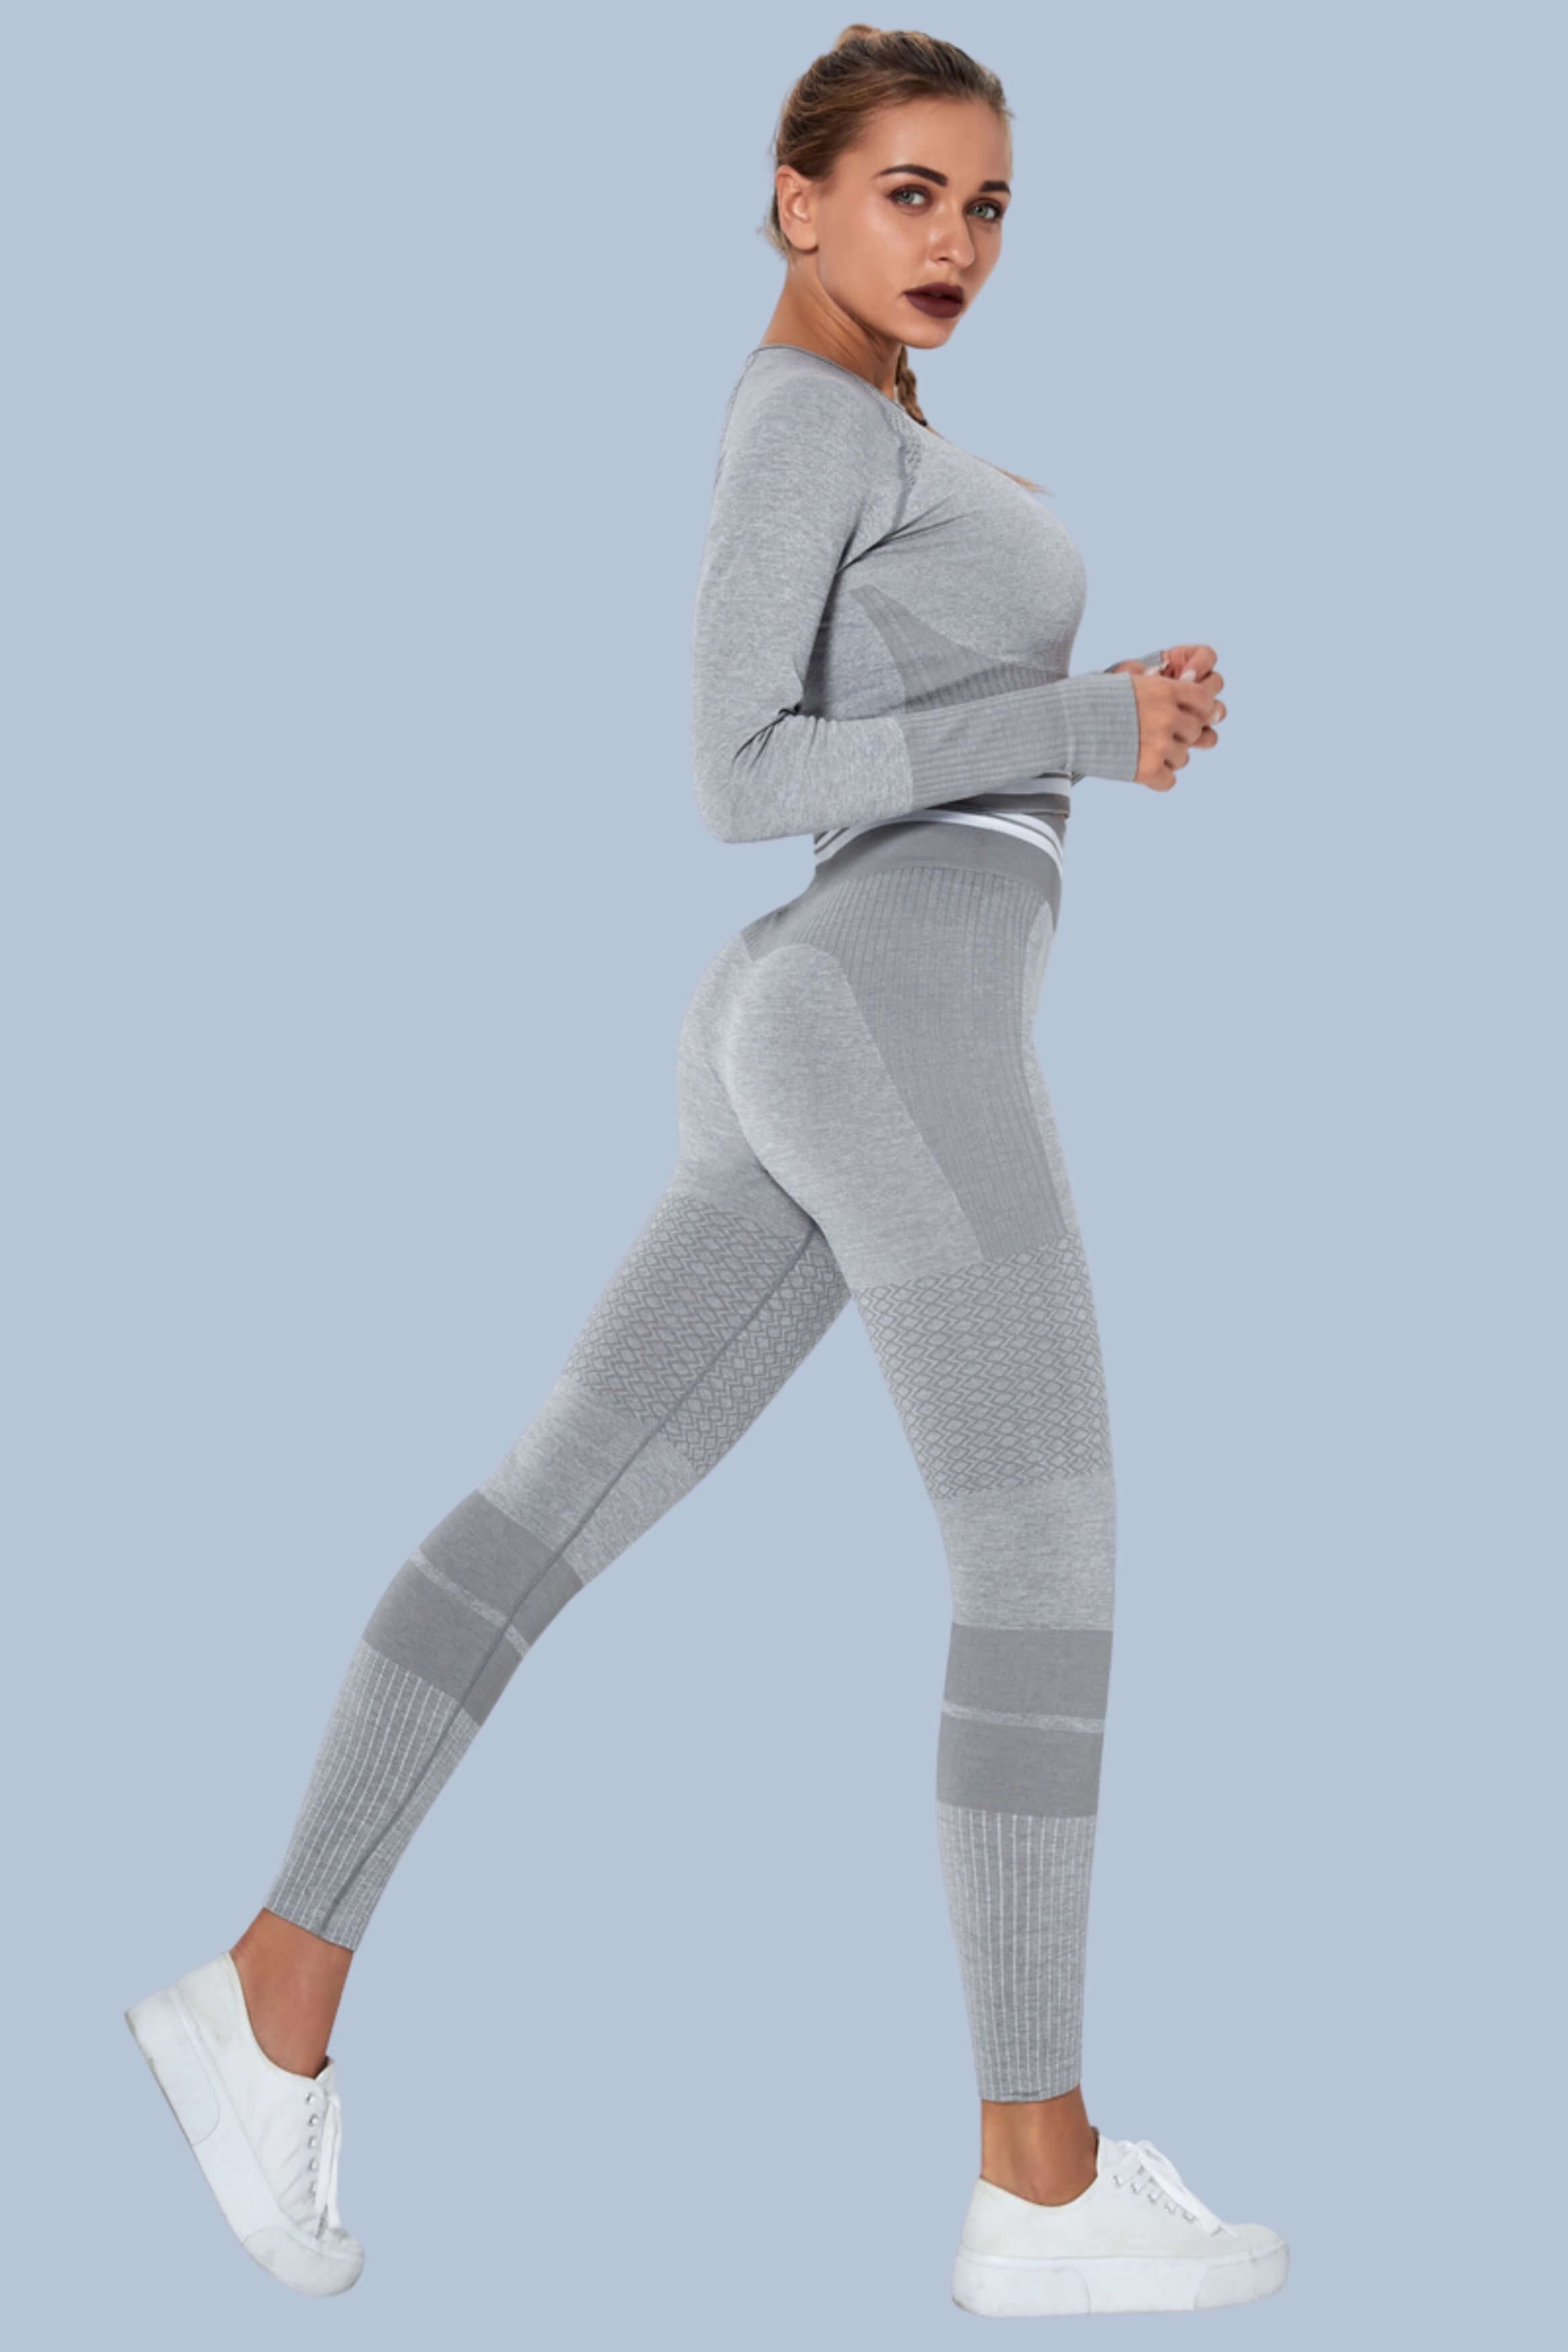 Tracksuit Women's Sport Suit Training Set Yoga Suits Workout Gym Clothes  Runnine Set Yoga Top And Pants ensemble Jogging Fe…